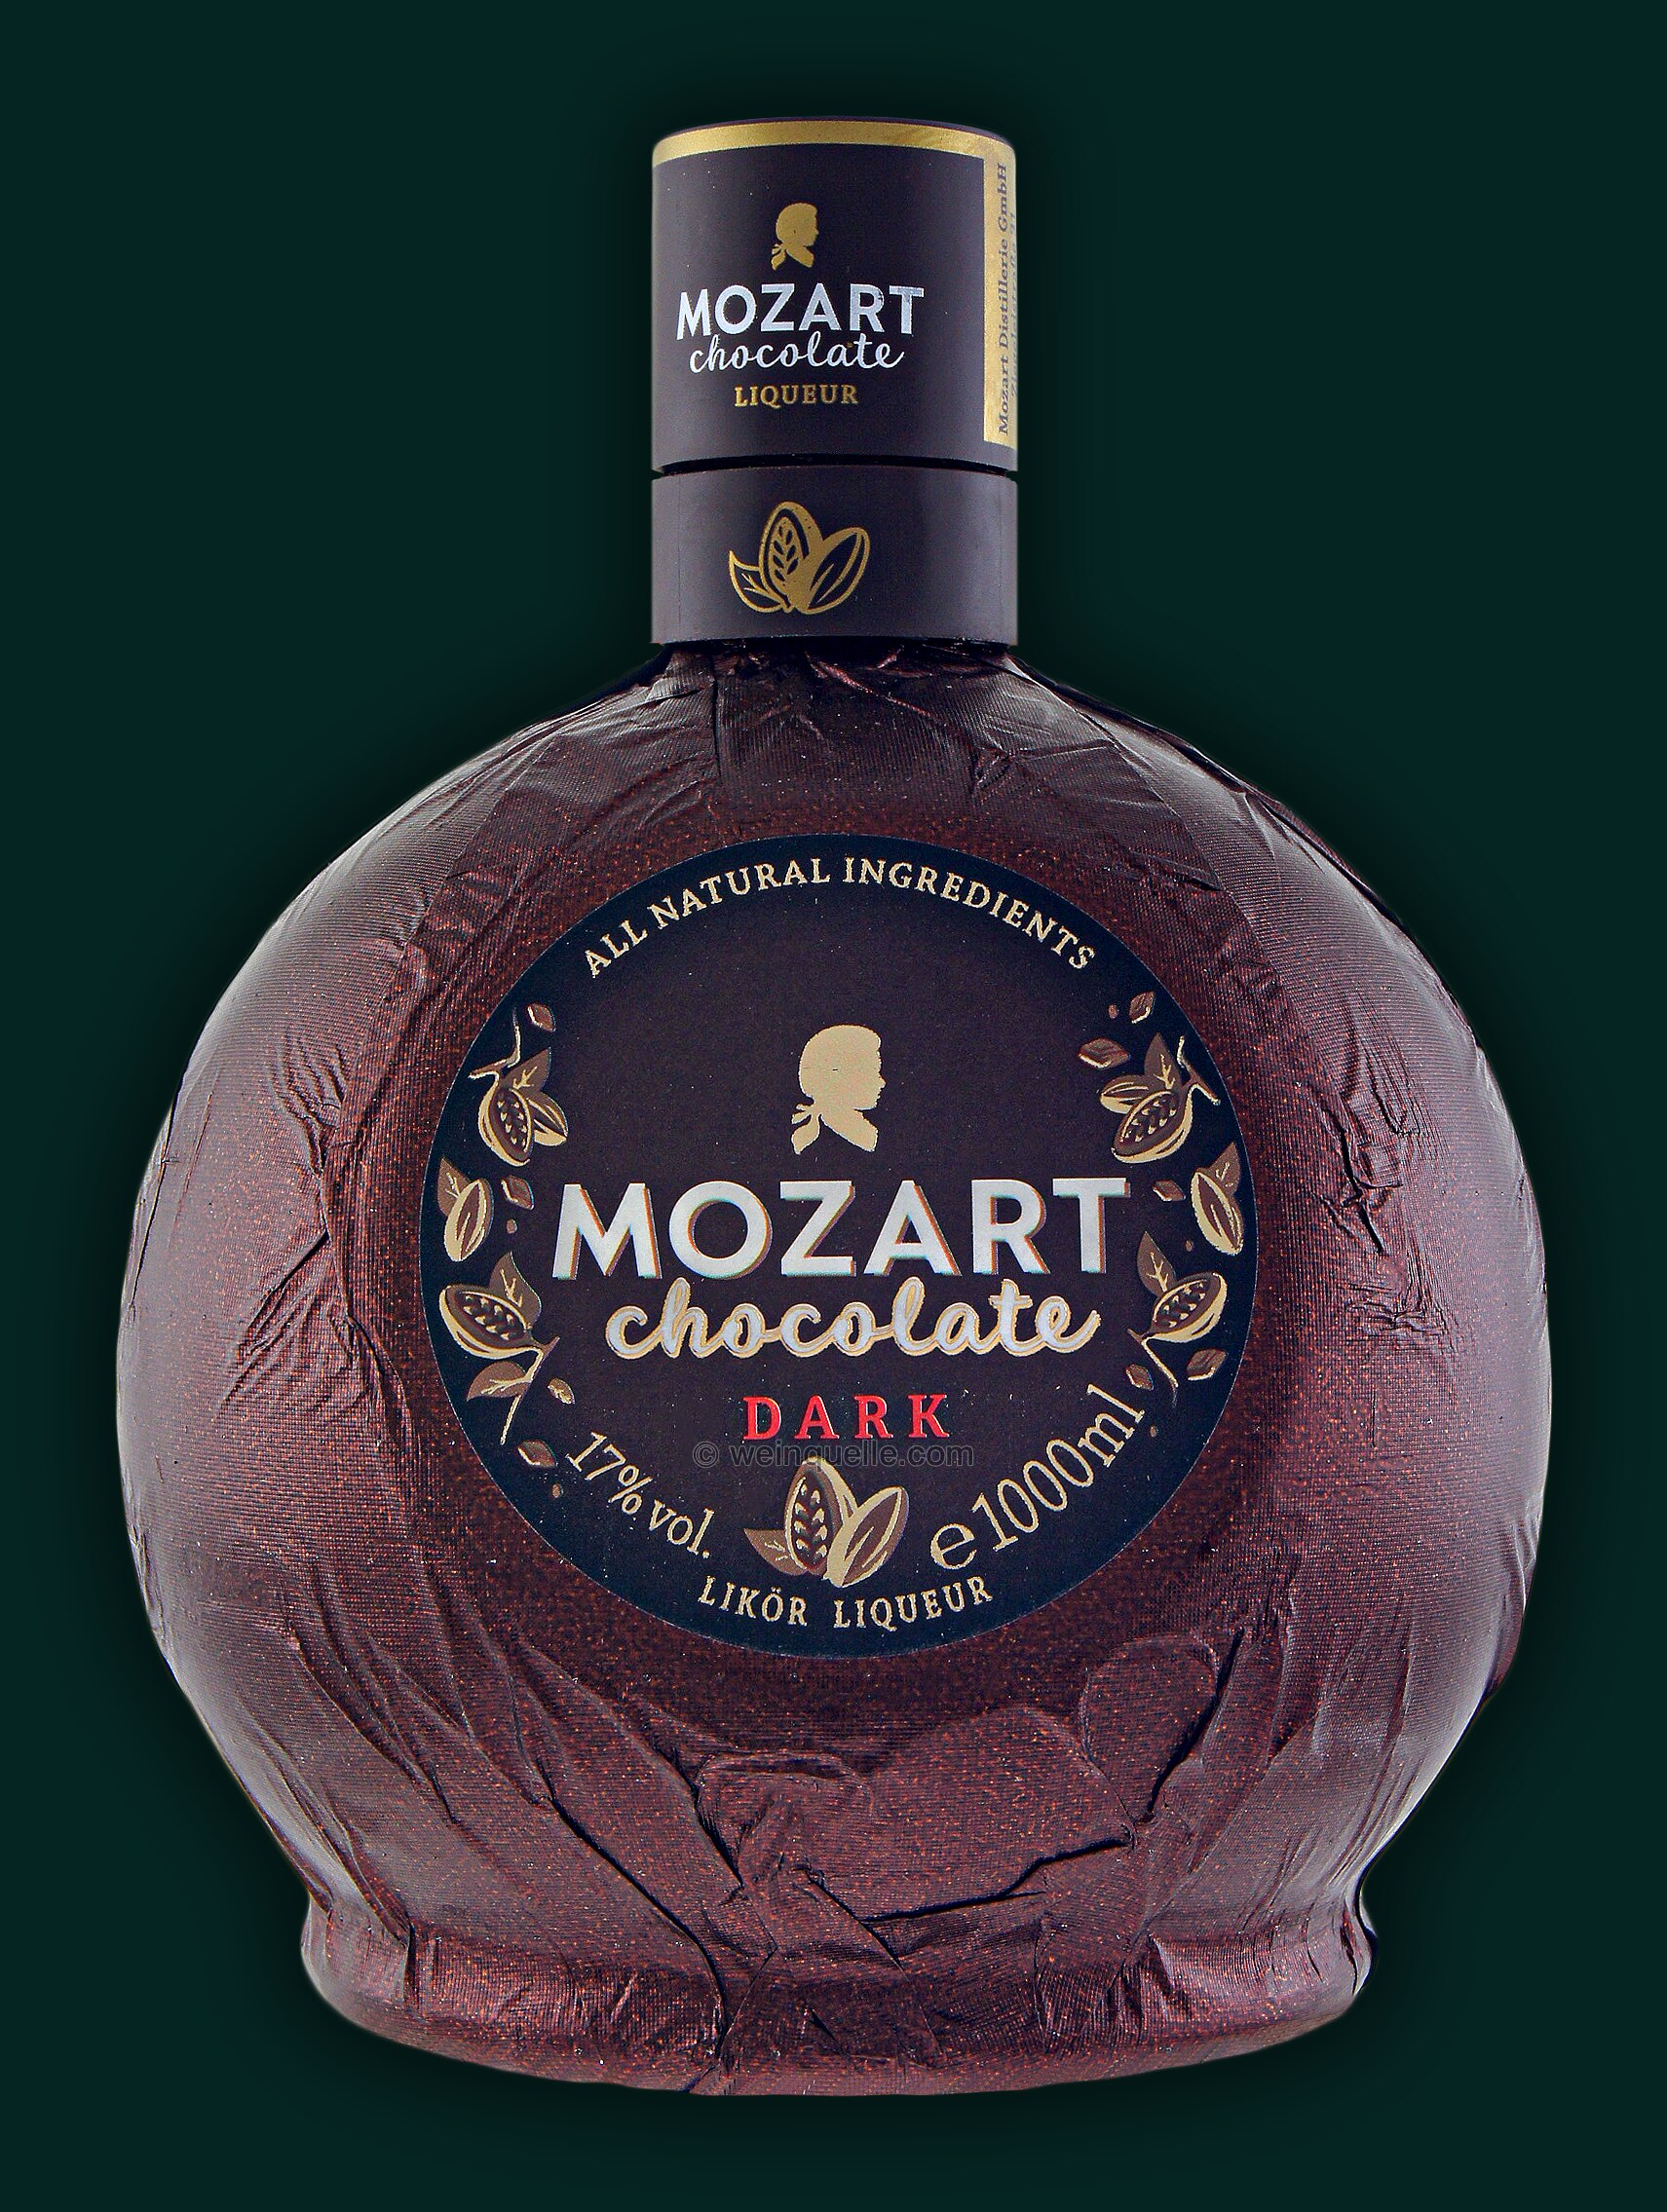 Mozart 1,0 - 22,50 € Liter, Dark Chocolate Weinquelle Lühmann